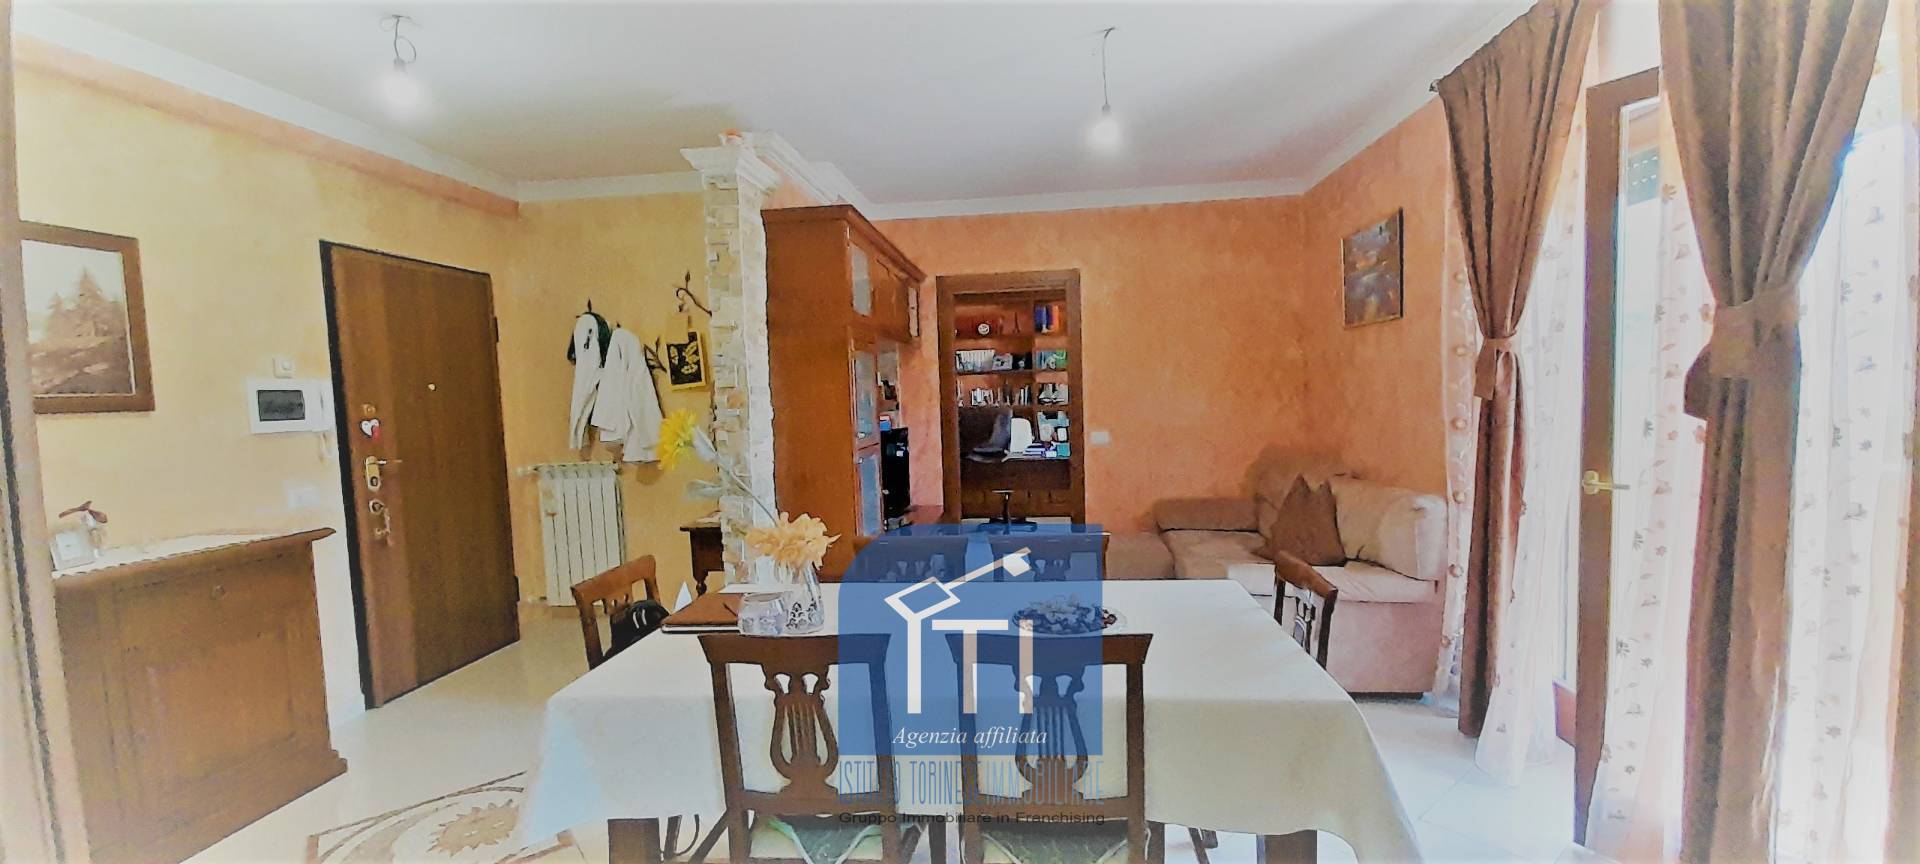 Appartamento in vendita a Piedimonte San Germano, 7 locali, prezzo € 119.000 | PortaleAgenzieImmobiliari.it